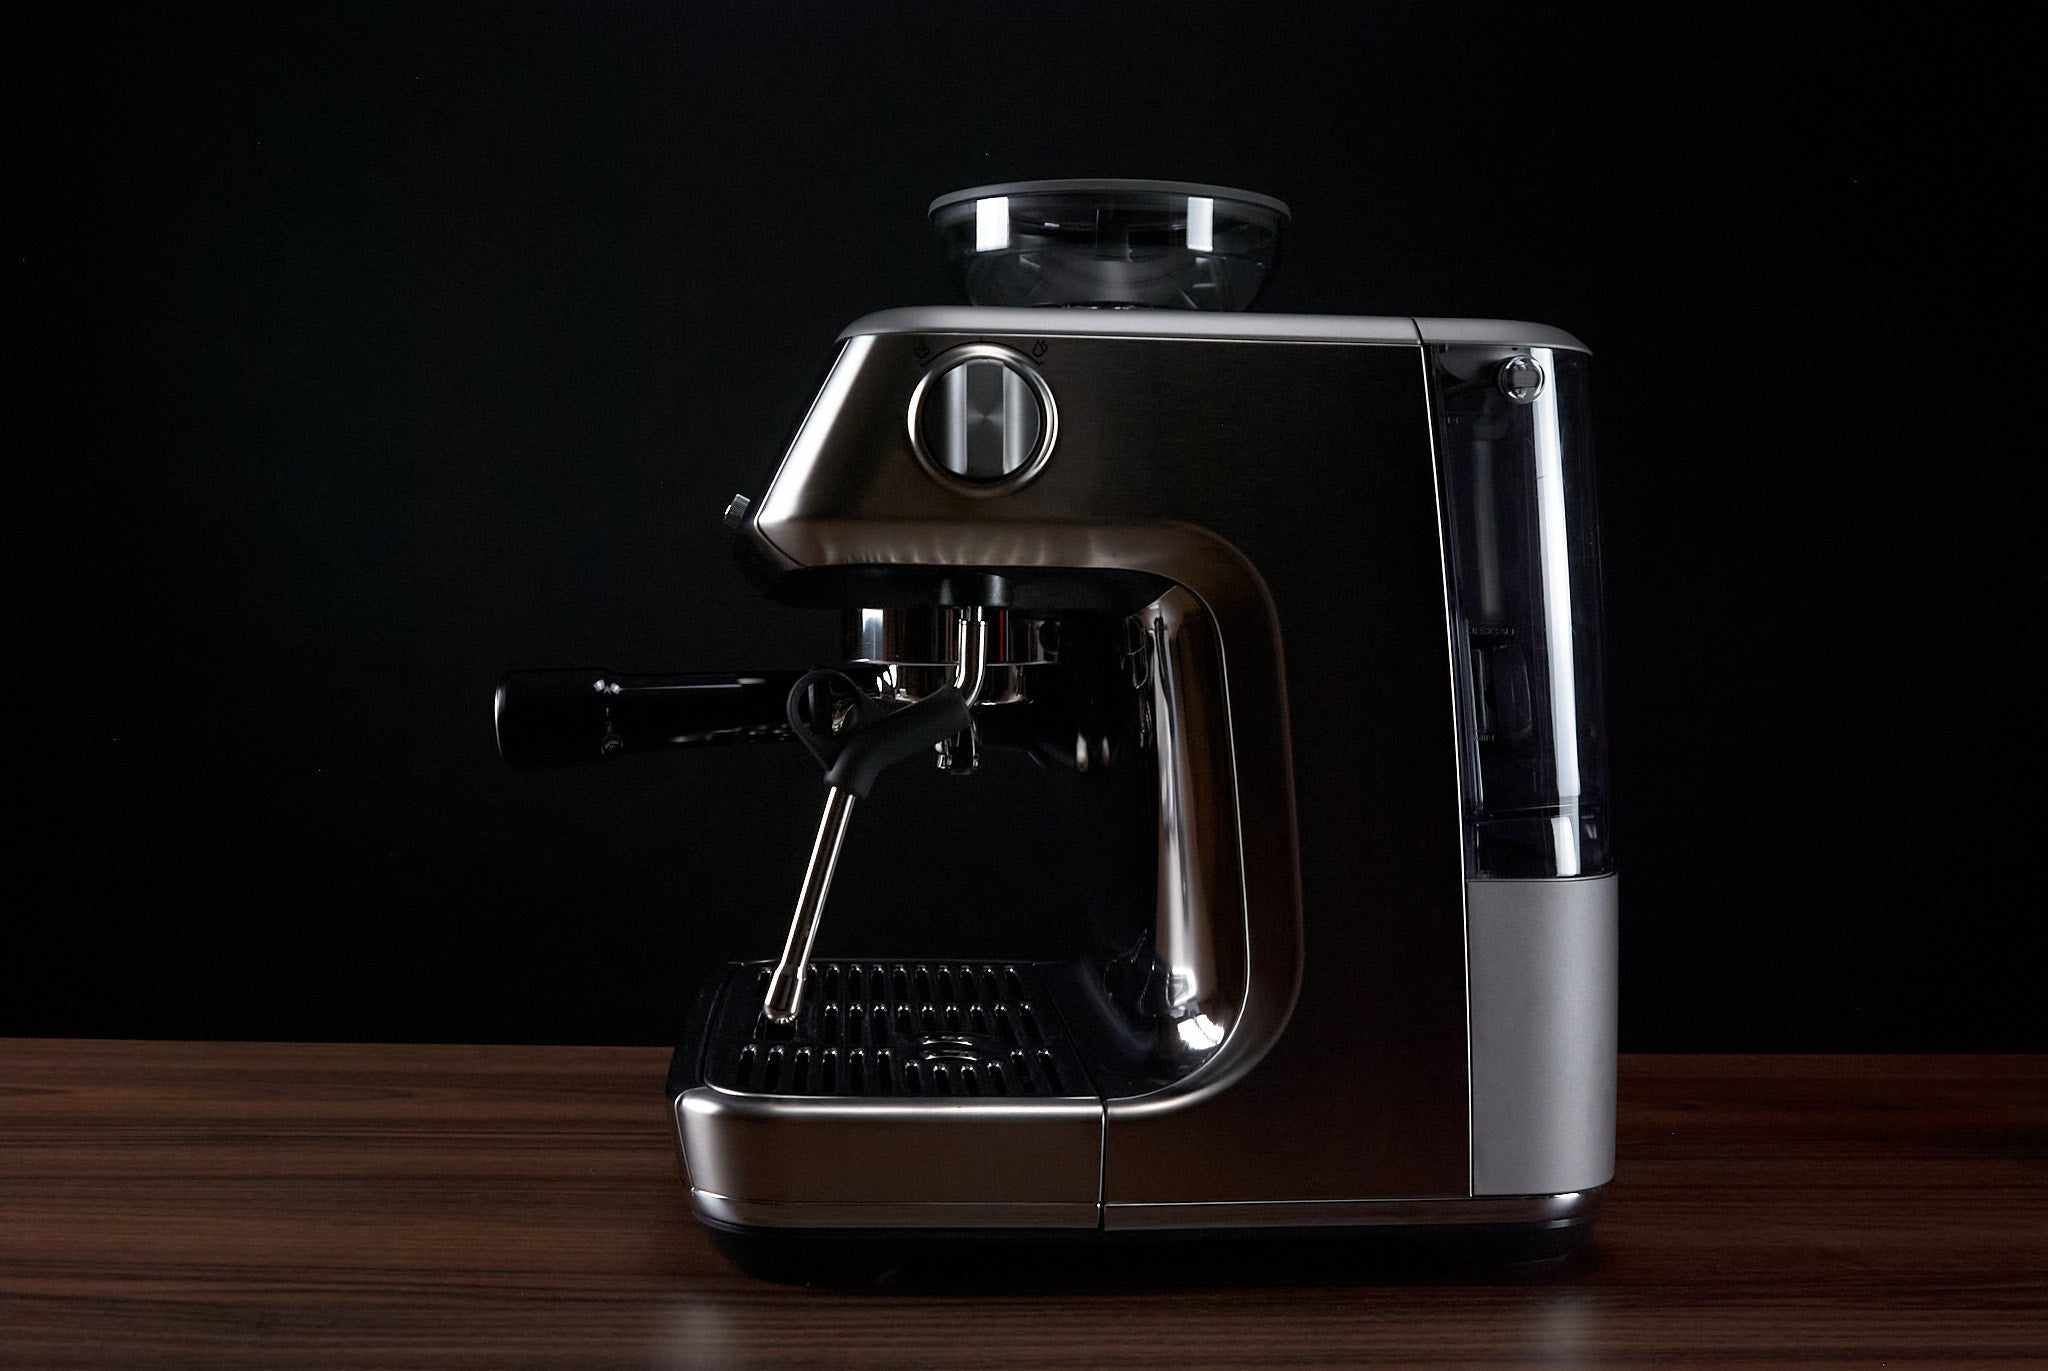 Sage The Barista Pro SES878 Coffee Espresso Maker Machine Silver/Black  Kitchen